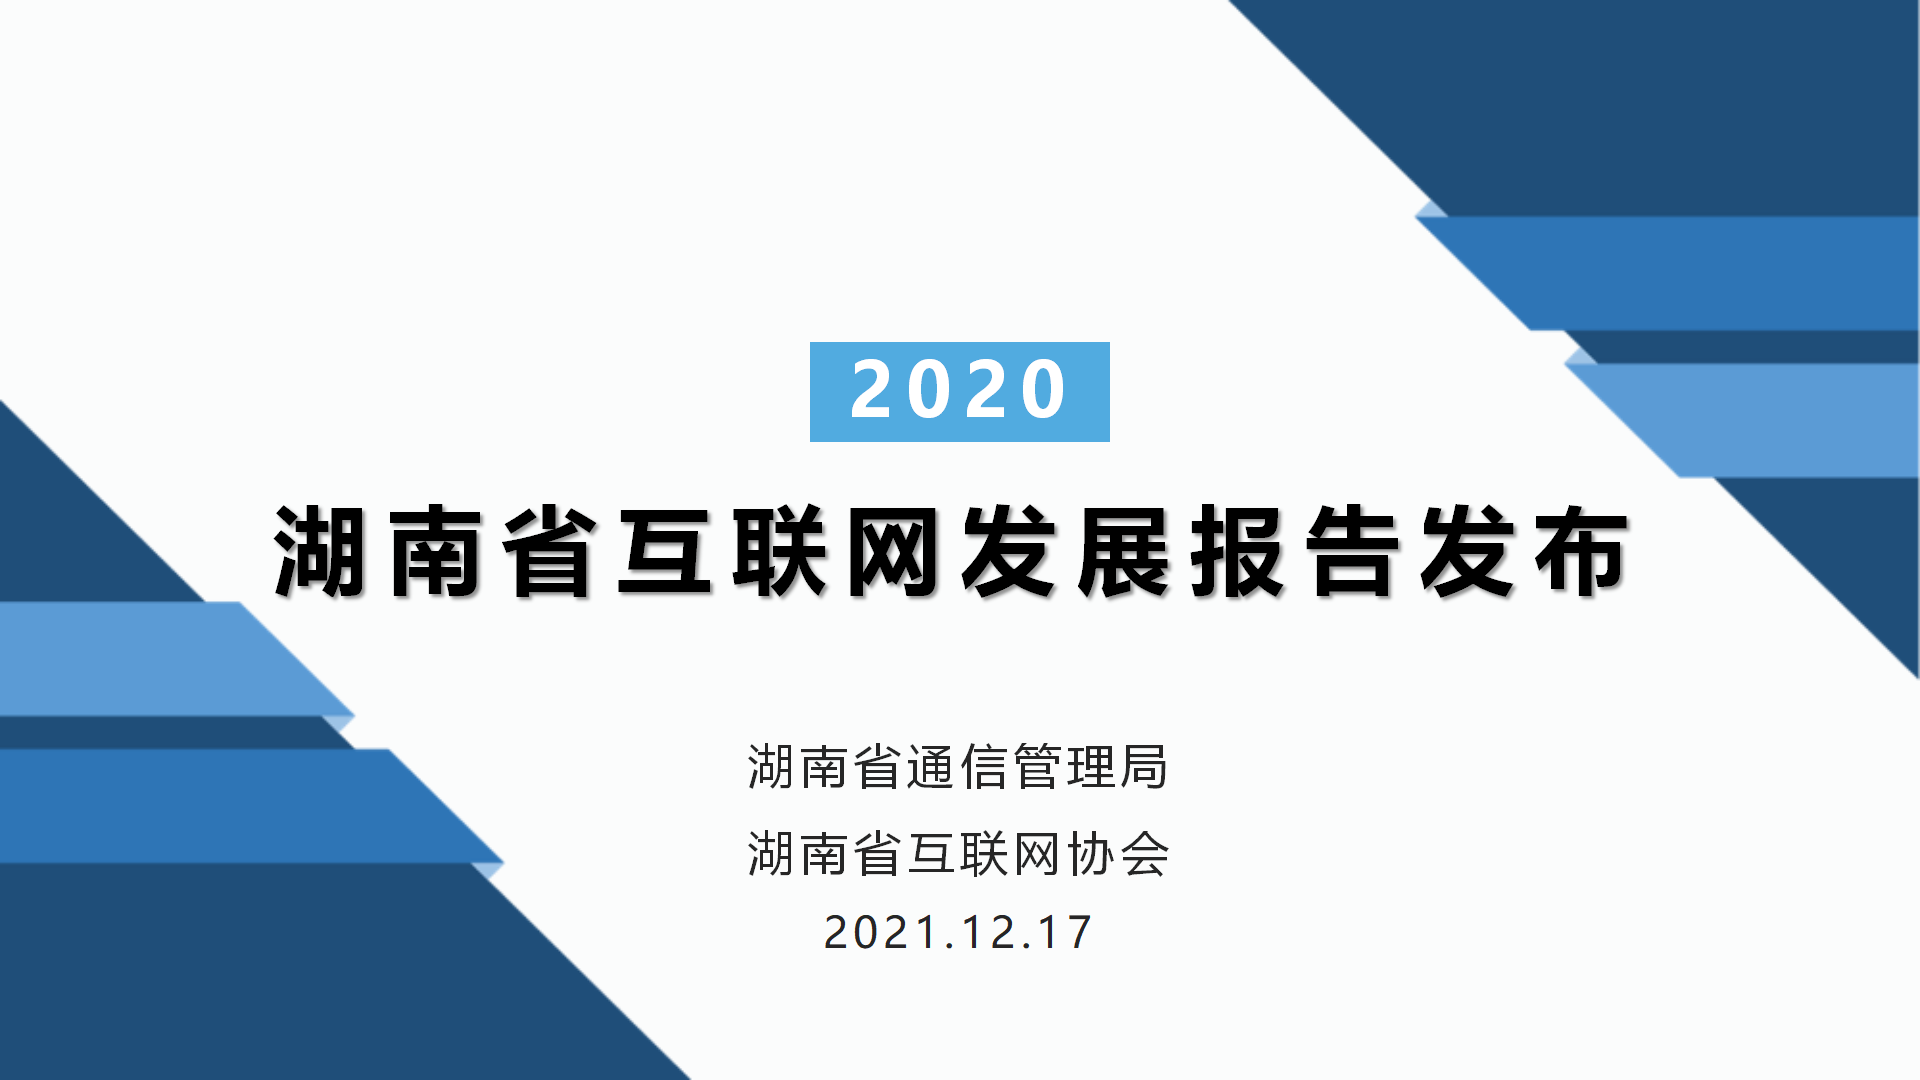 2020年湖南省互联网发展报告发布